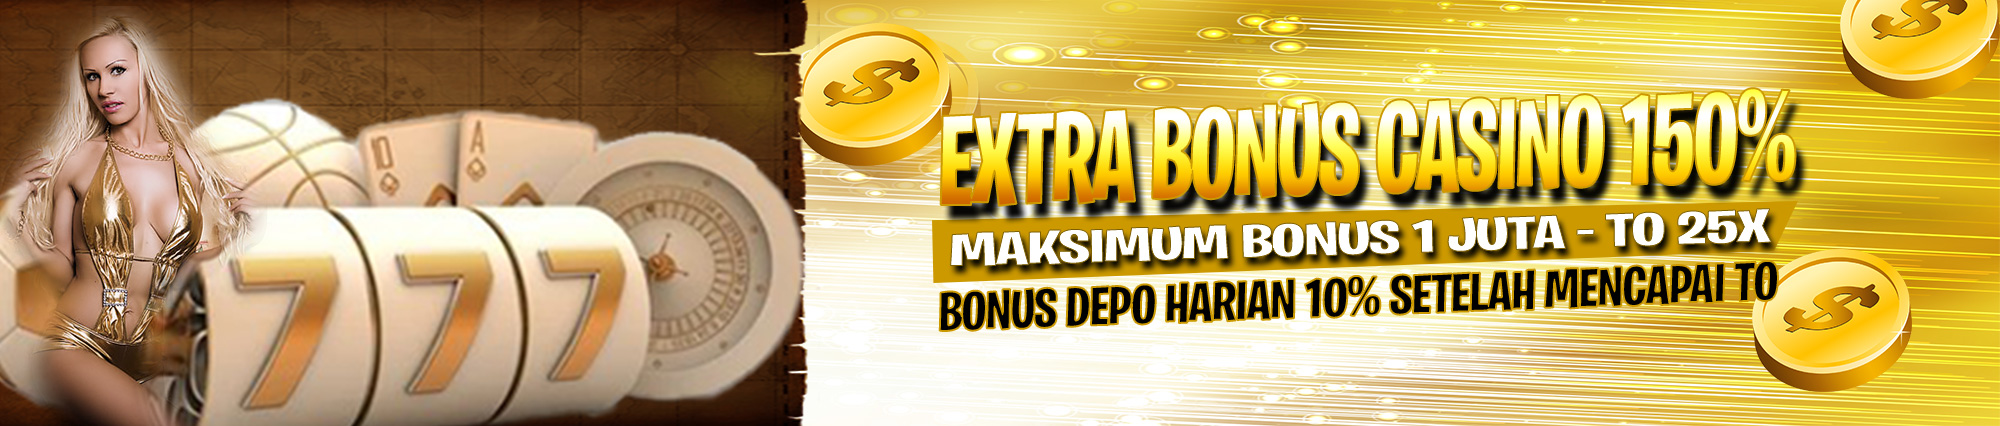 Promo Extra Bonus 150%